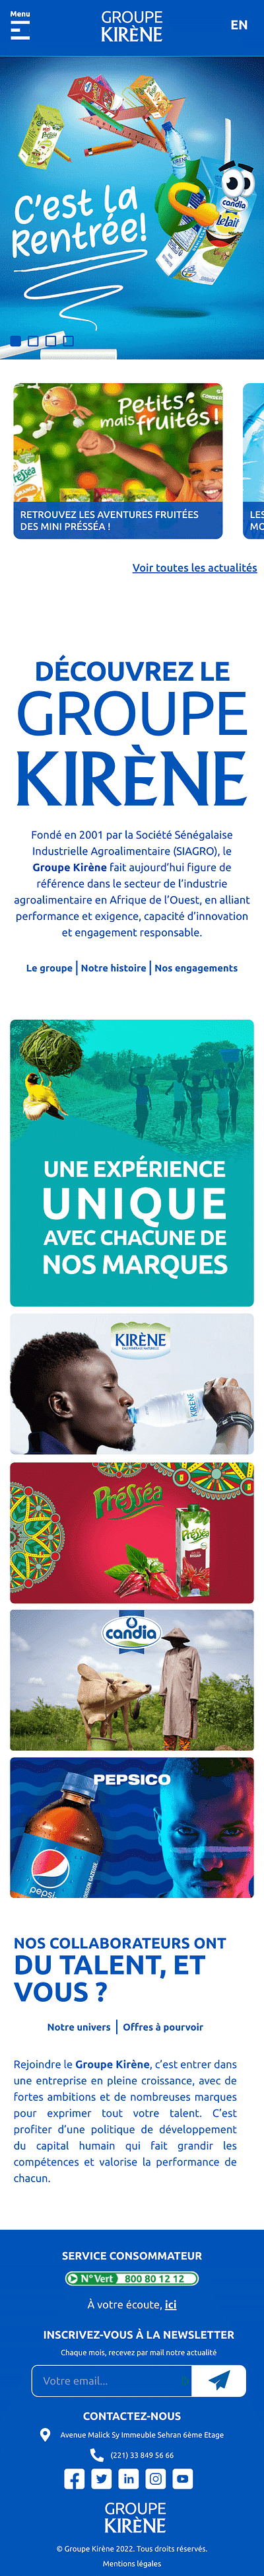 Refonte du site internet du Groupe Kirène - Creazione di siti web